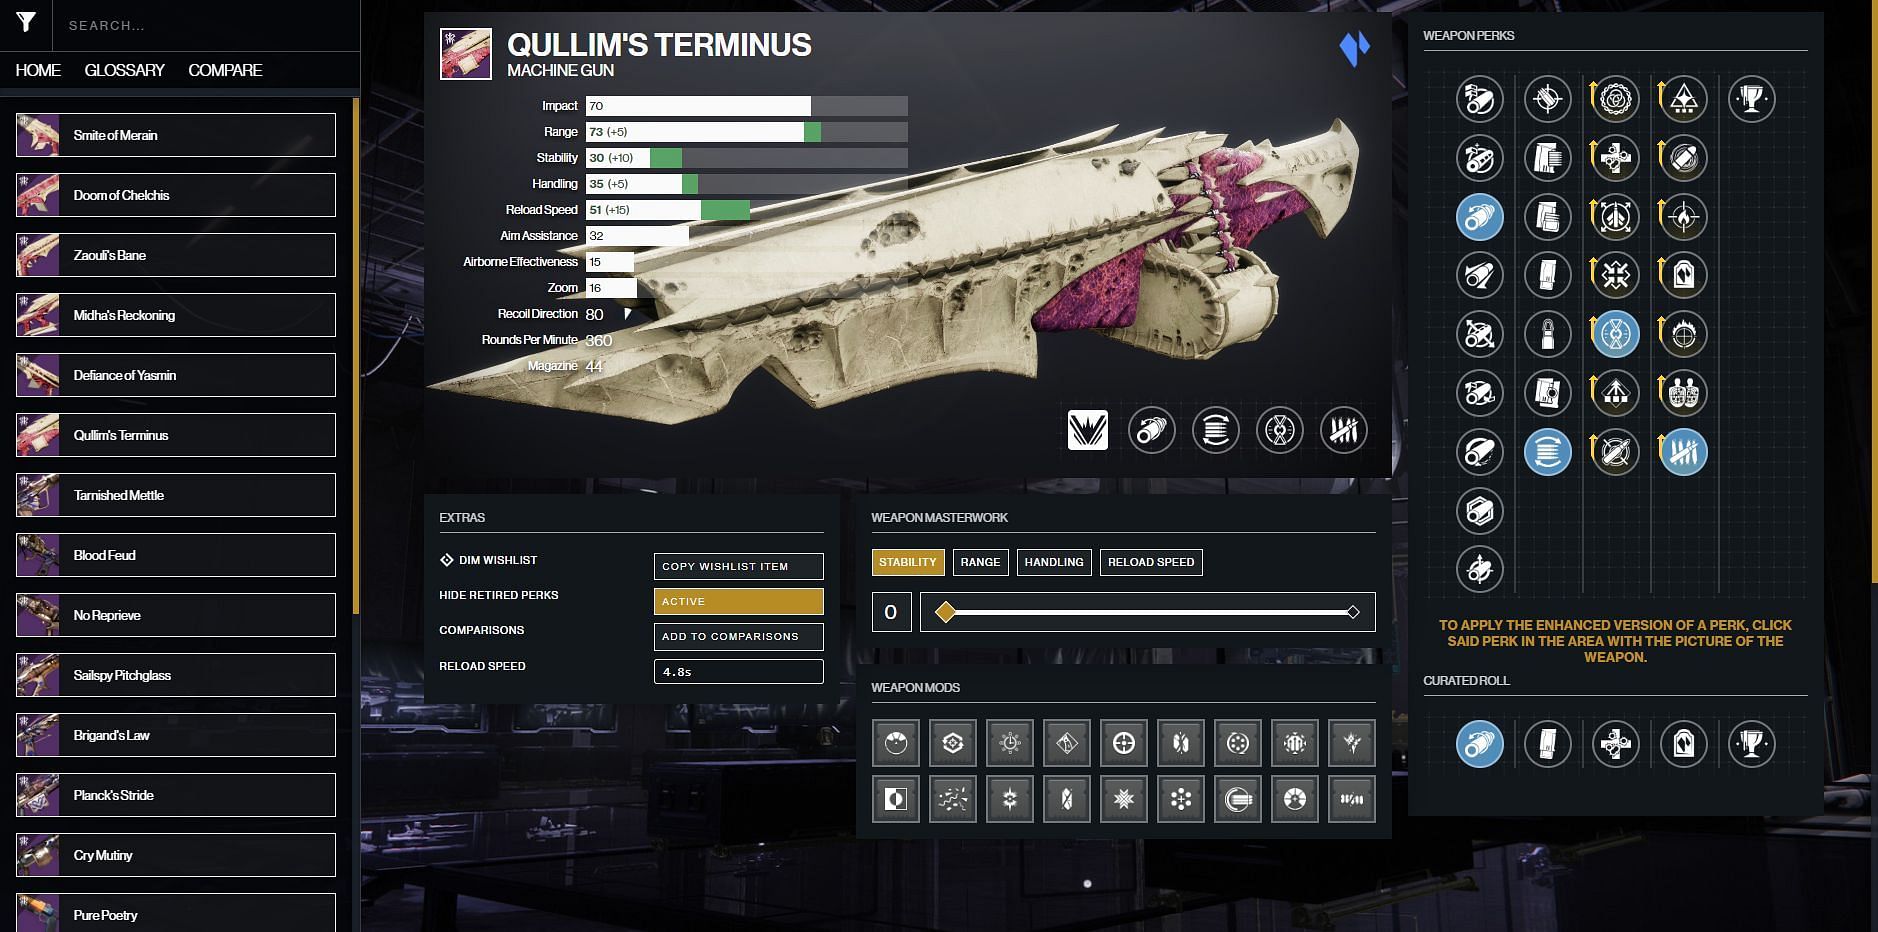 Qullim&#039;s Terminus Machine Gun PvE god roll (Image via Destiny 2 Gunsmith)